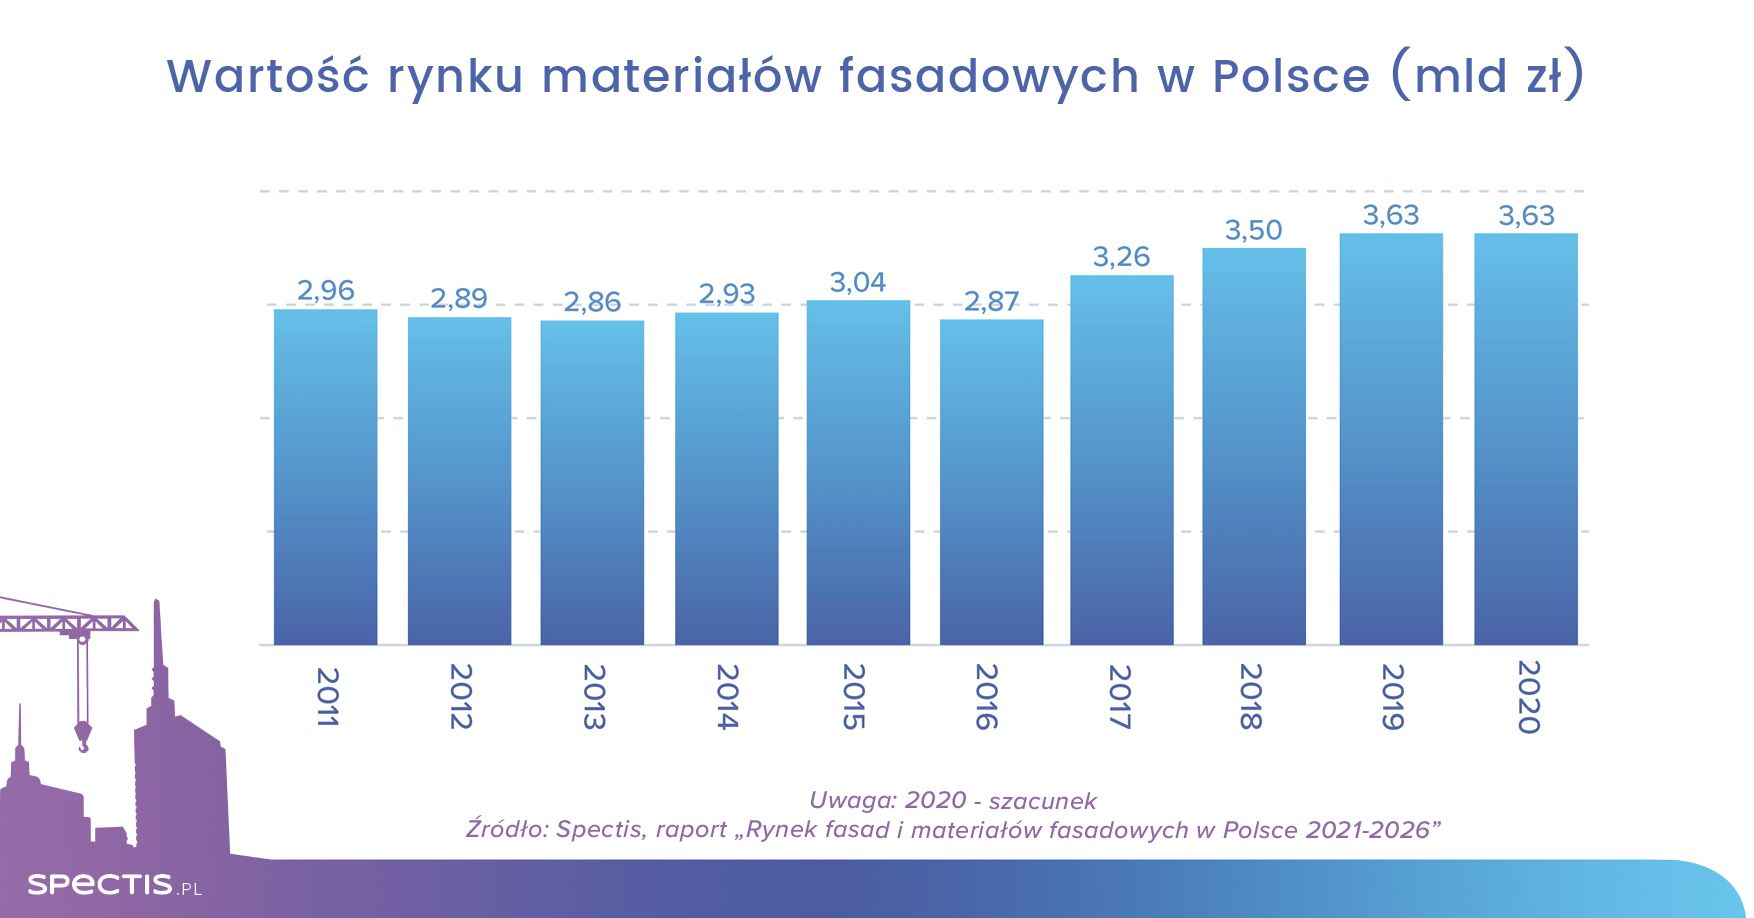 Wartość rynku materiałów fasadowych w Polsce do 2026 r. sięgnie 4 mld zł